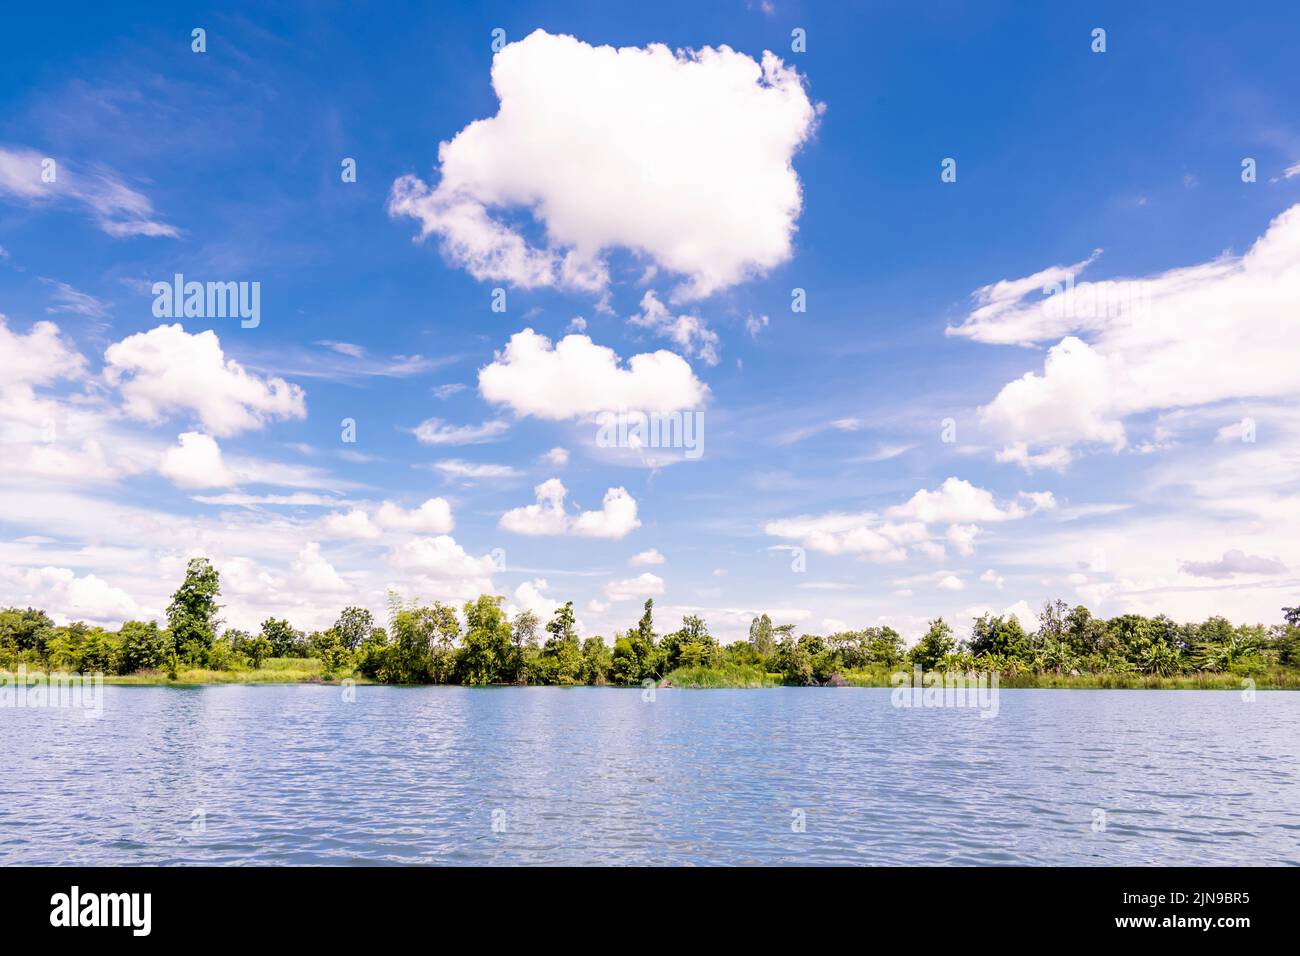 lac d'étang contre des arbres verts près du ciel bleu avec des nuages Banque D'Images